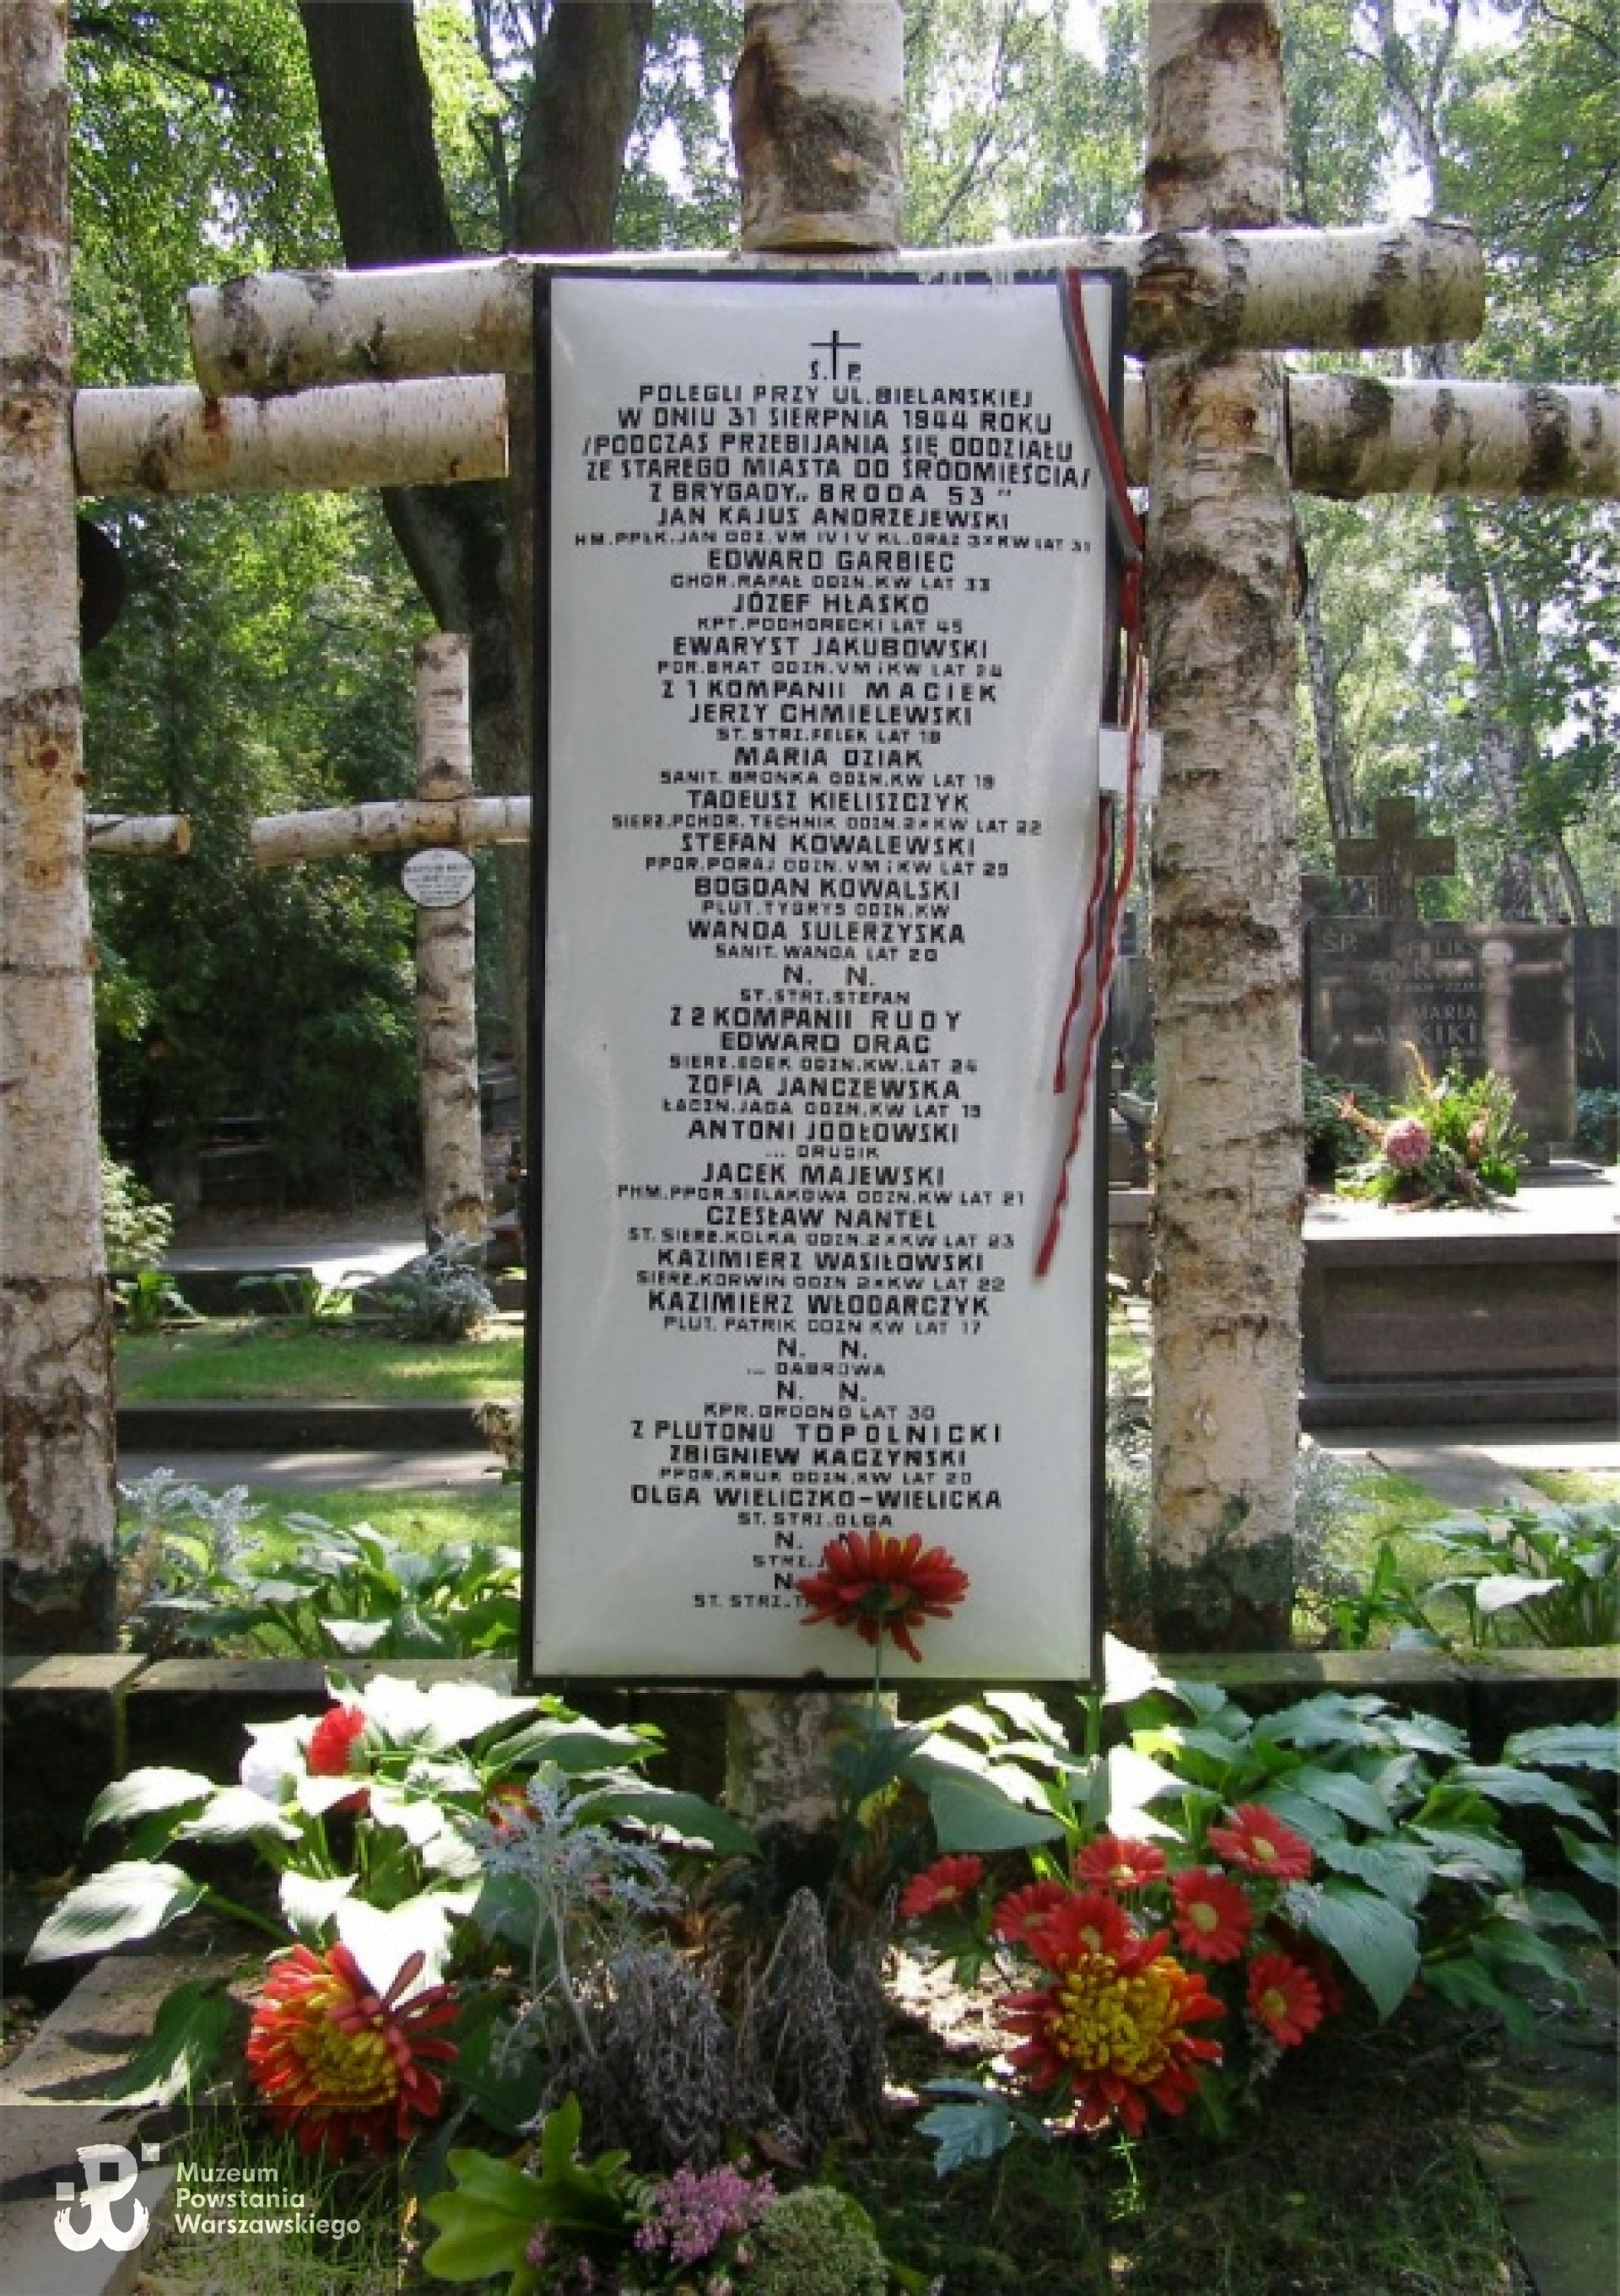 Cmentarz Wojskowy na Powązkach w Warszawie - zbiorowa mogiła poległych na Bielańskiej żołnierzy i oficerów "Brody 53"